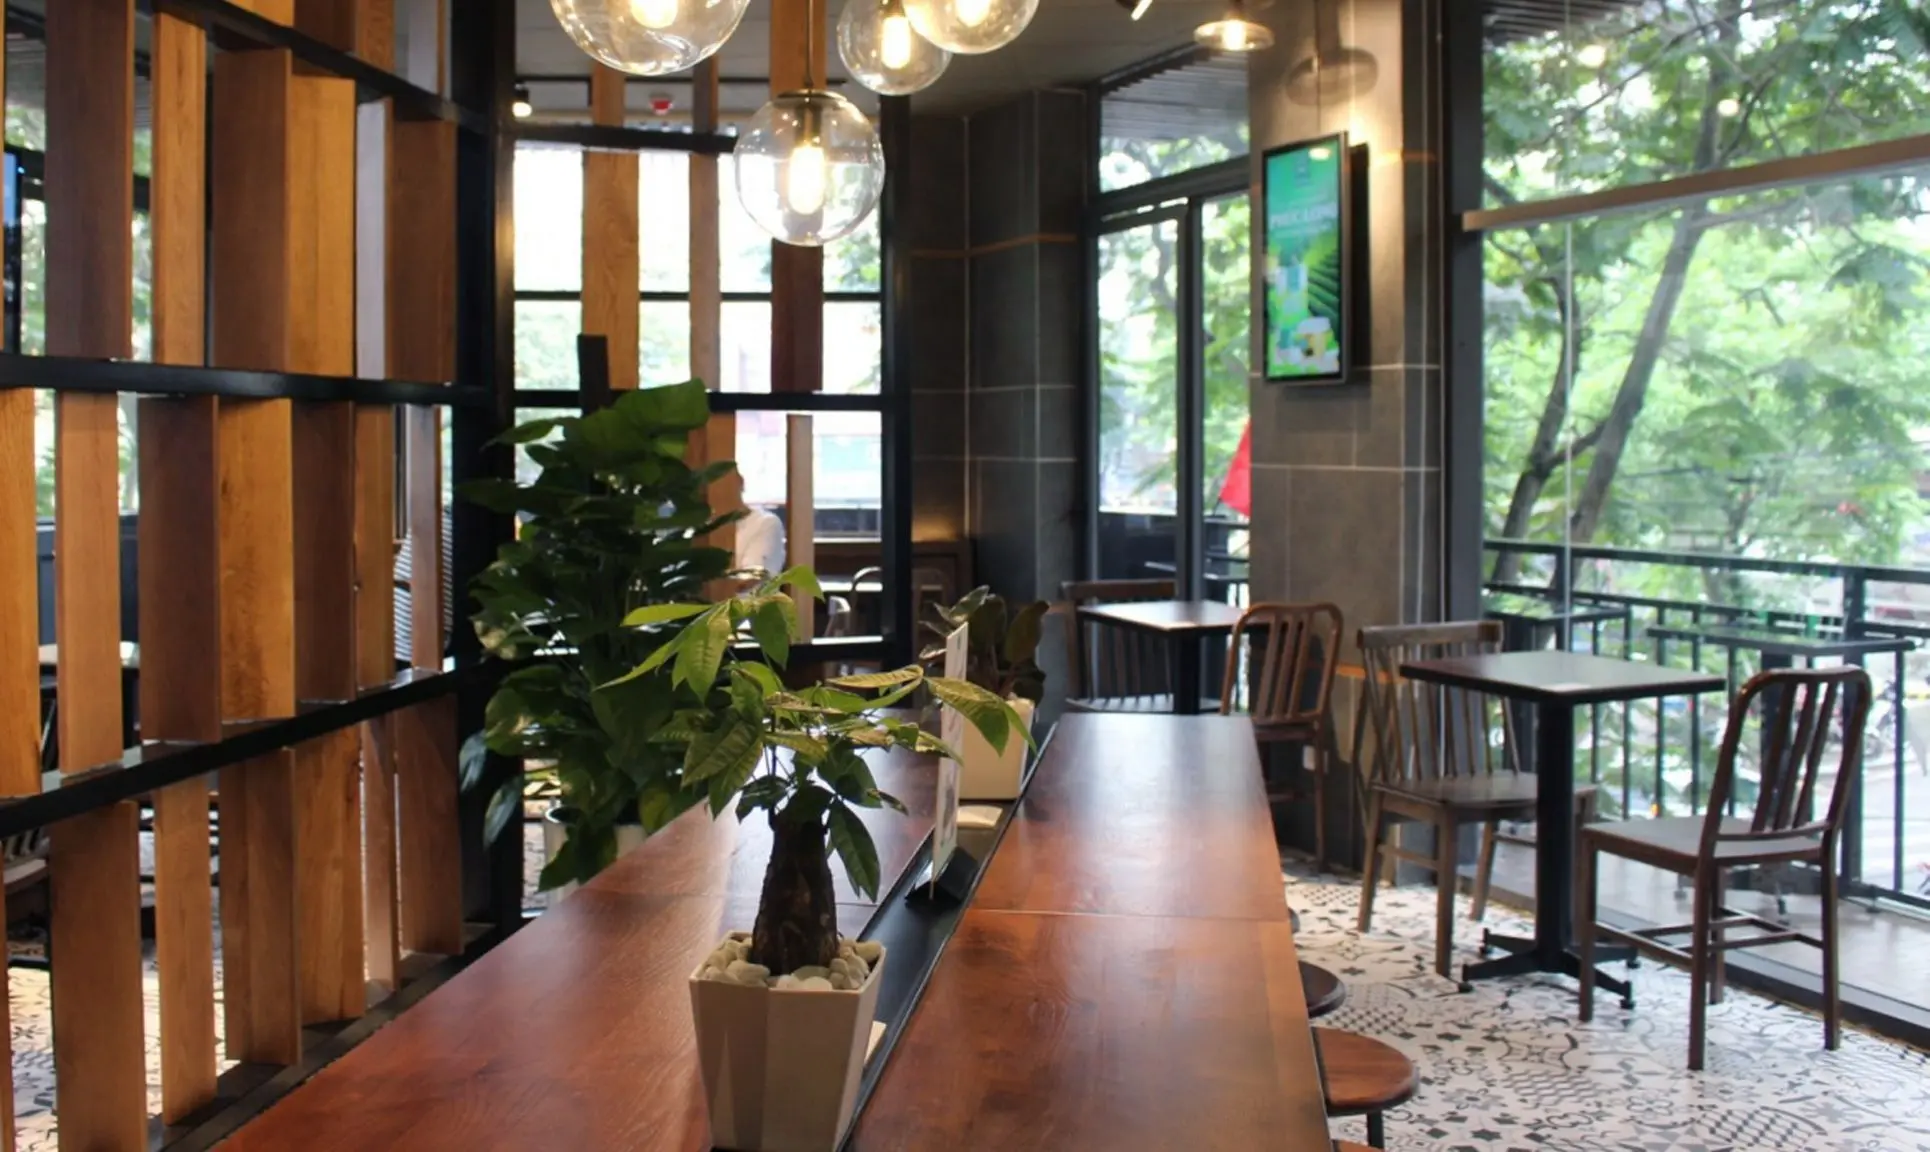 Thiết kế đặc biệt của những mẫu ghế dài quán cafe bằng gỗ tự nhiên